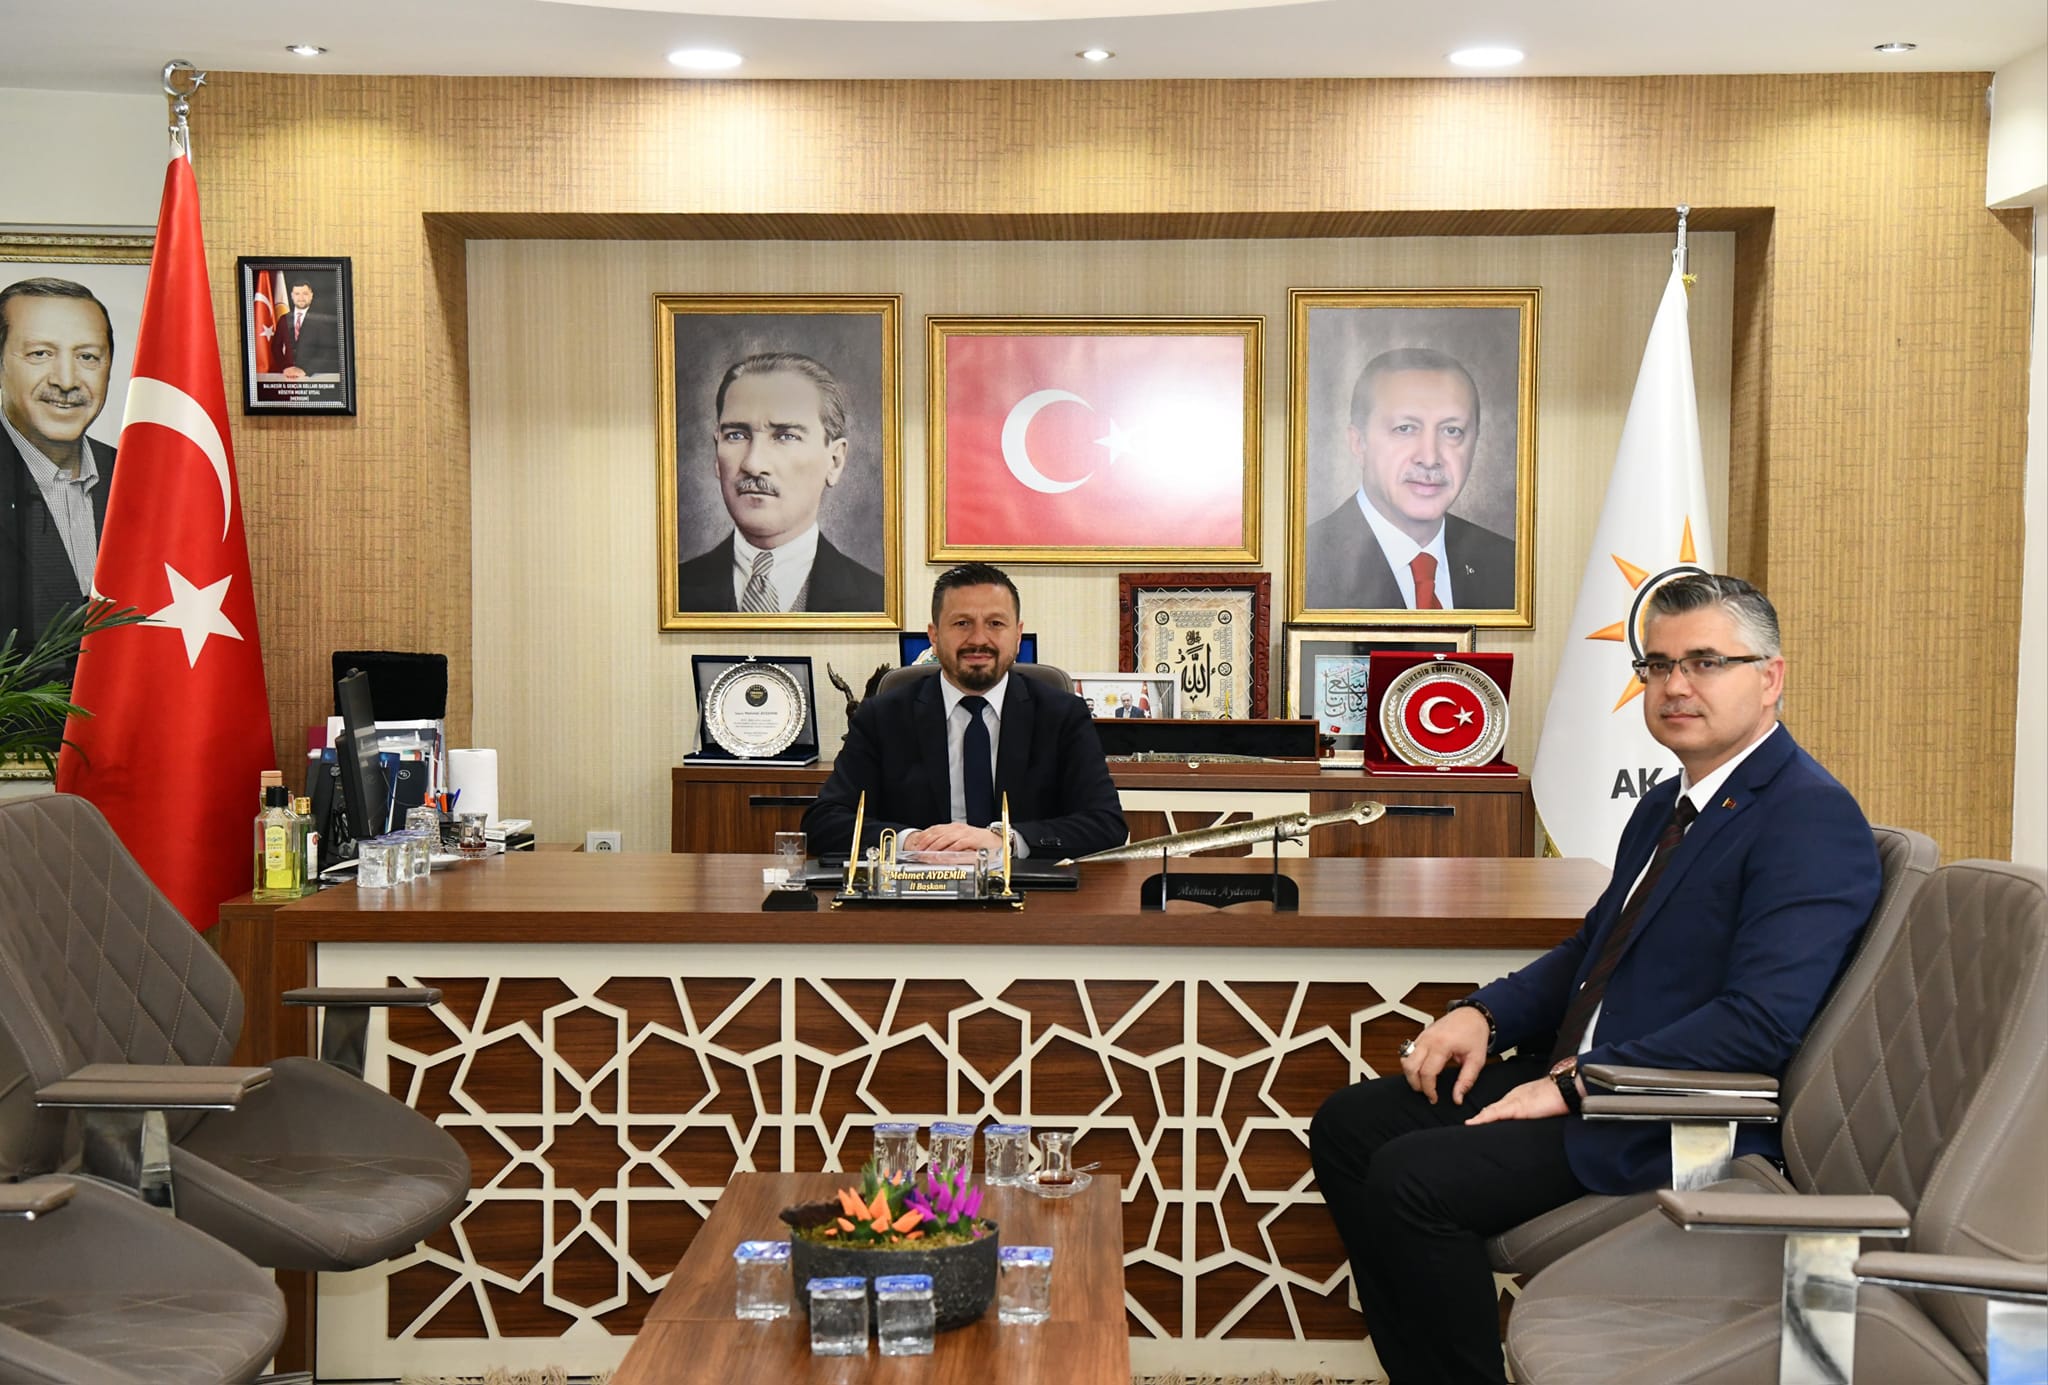 Balıkesir İl Tarım ve Orman Müdürü Erkan Alkan, AK Parti İl Başkanlığı'na nezaket ziyareti gerçekleştirdi.